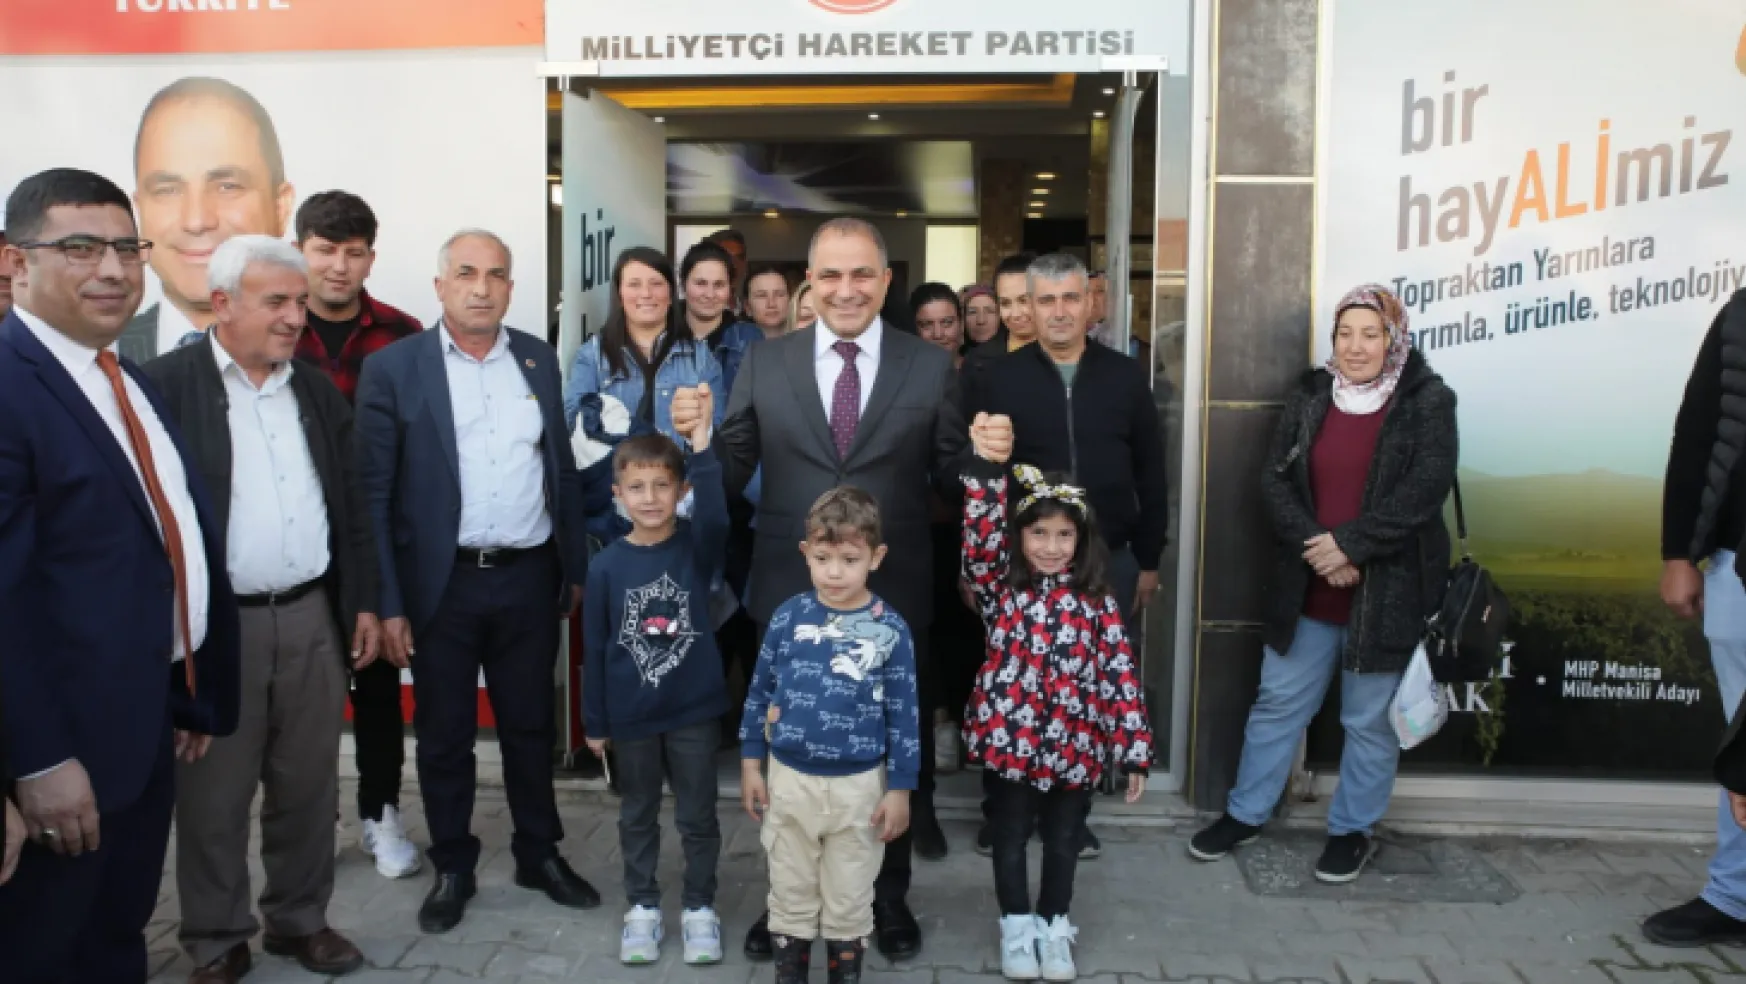 MHP Manisa Milletvekili Adayı Ali Uçak : 7/24 ulaşılabilir bir milletvekili olacağım